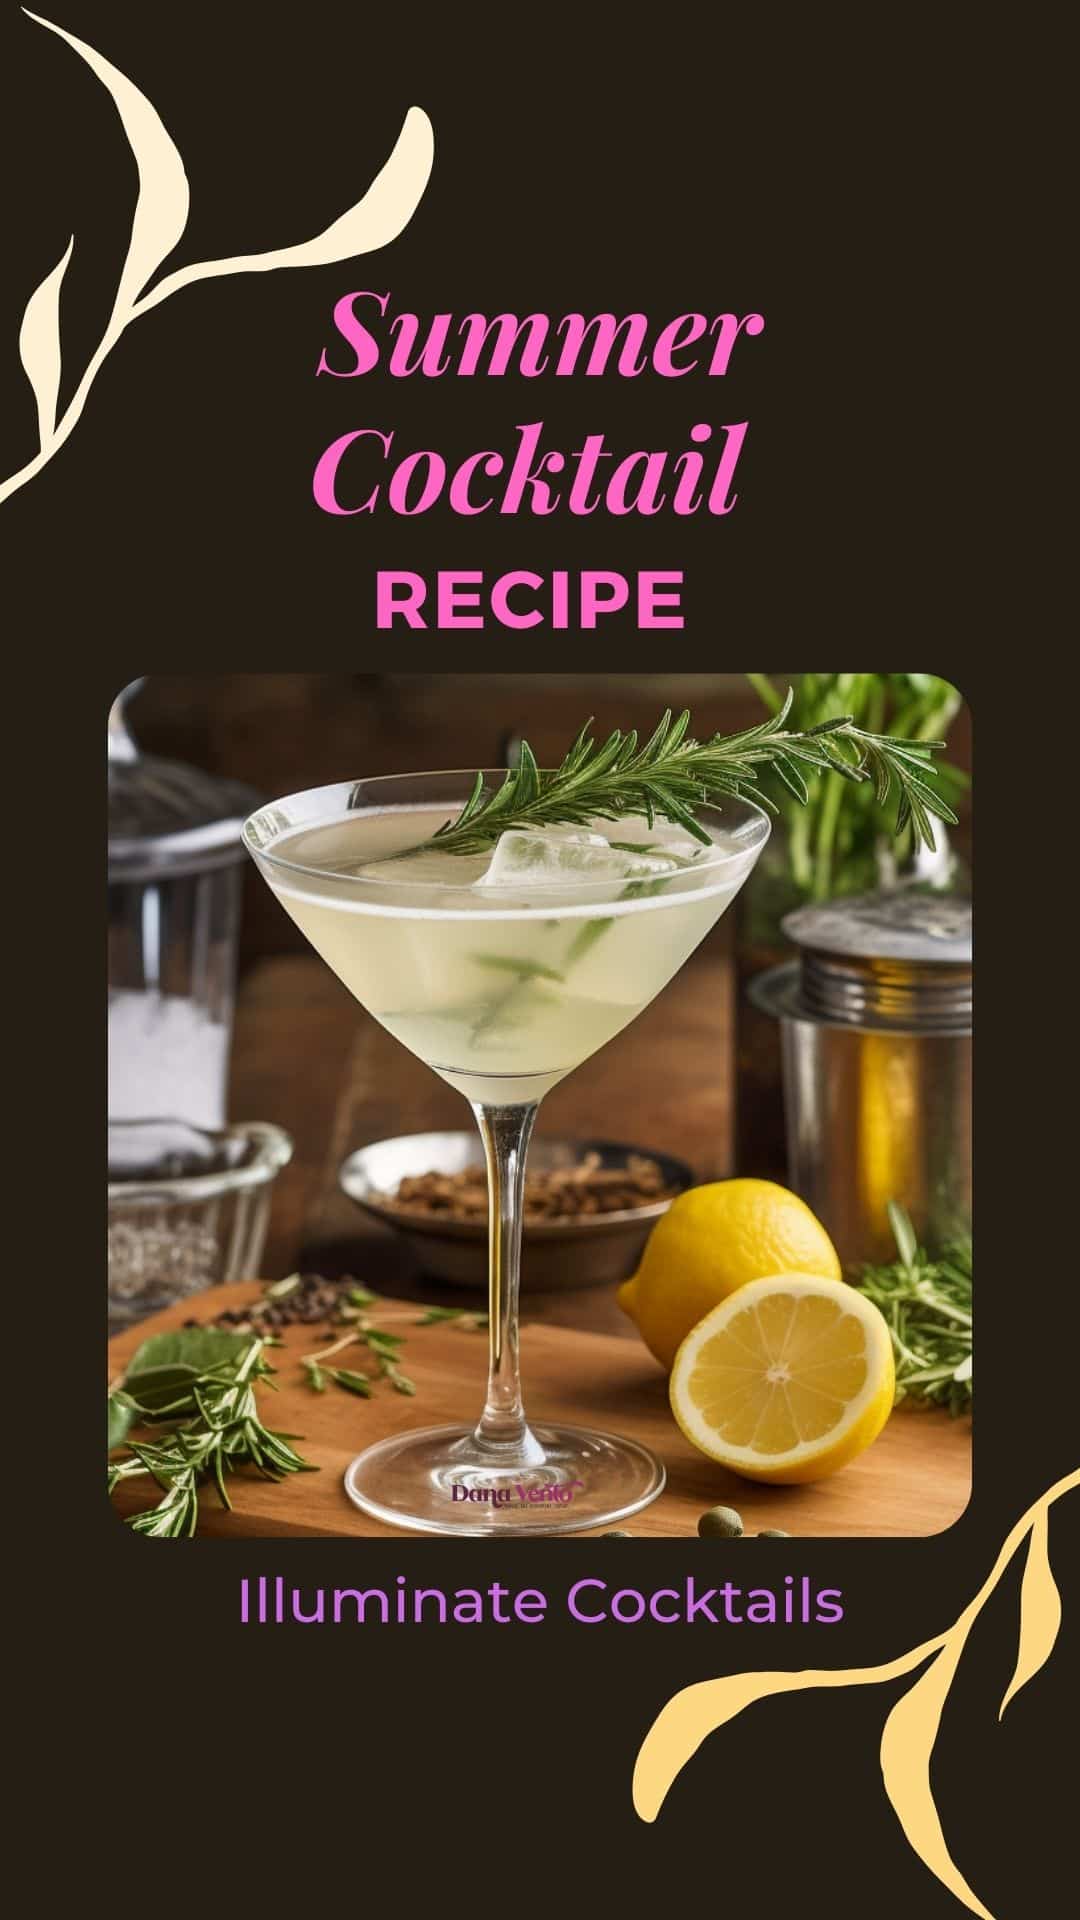 Summer Cocktail with Illuminate Sauvignon Blanc